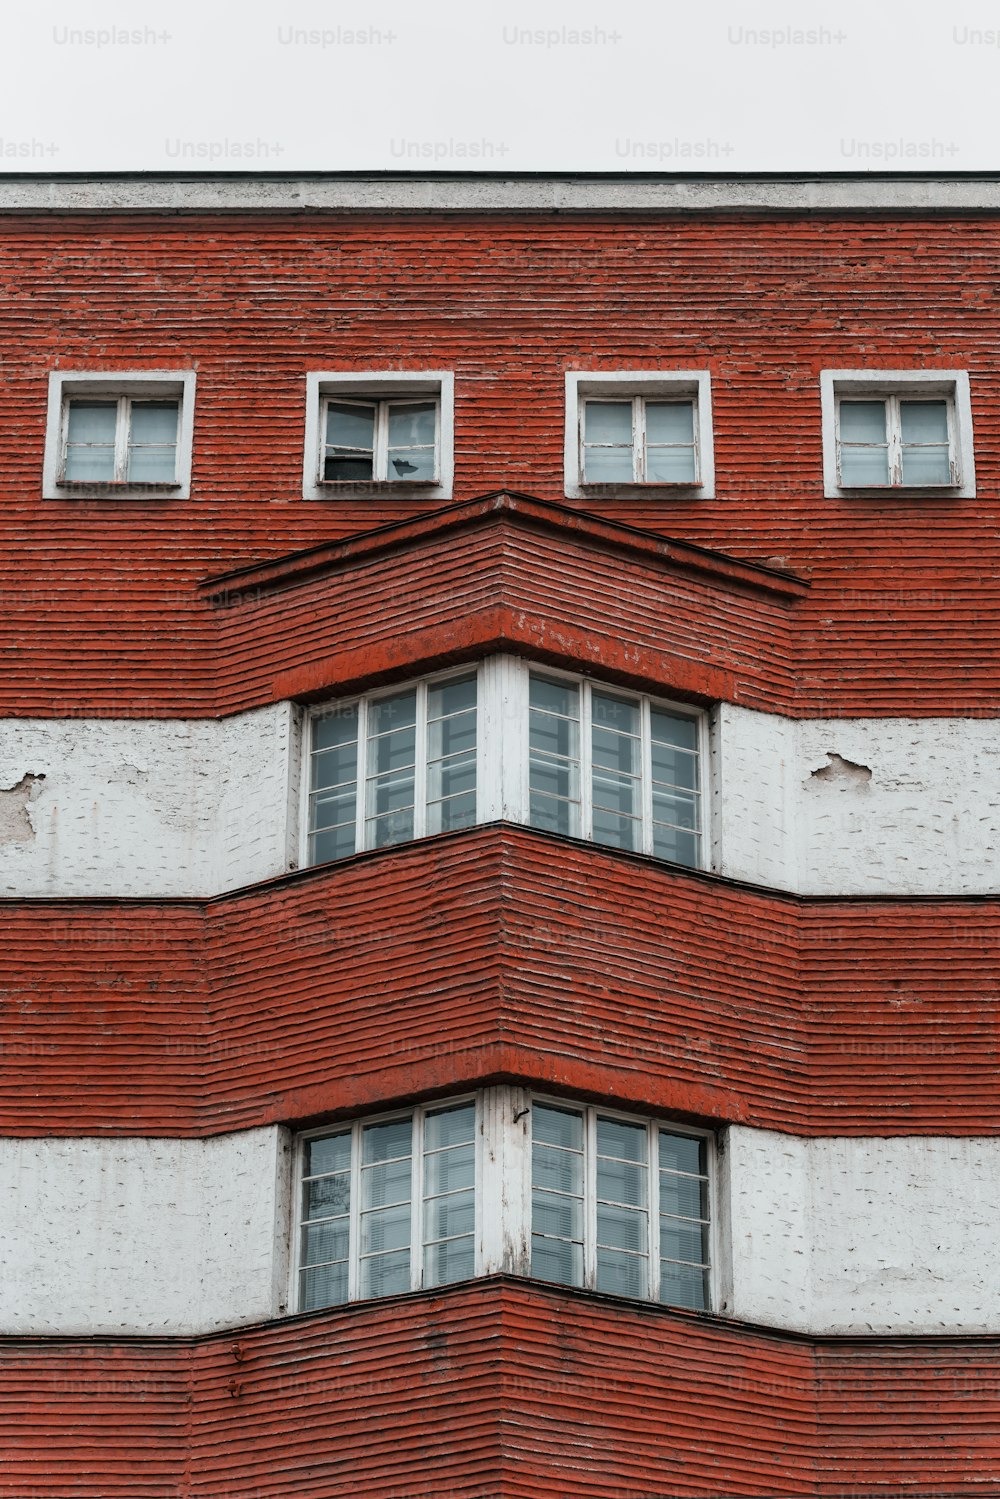 un bâtiment en briques rouges avec des fenêtres blanches et une horloge